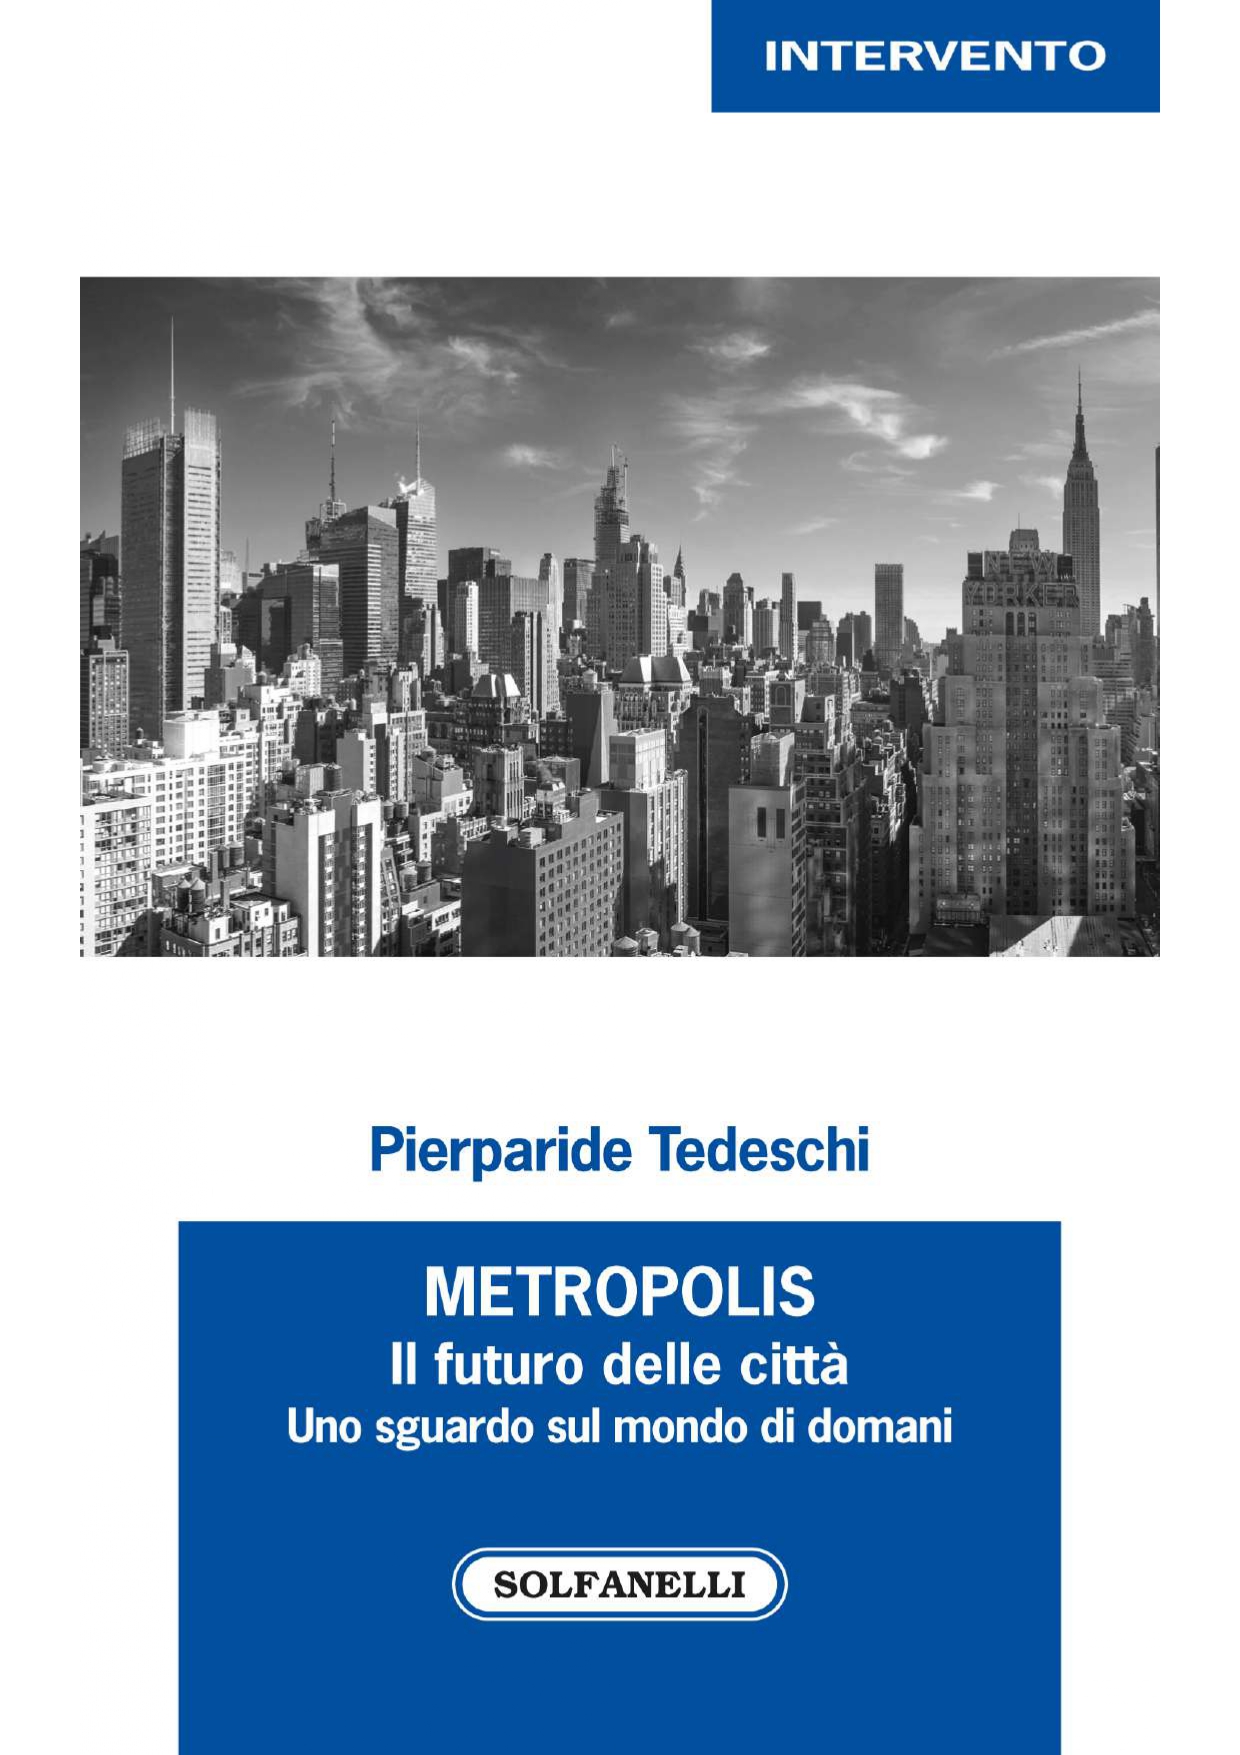 METROPOLIS Il futuro delle città uno sguardo sul mondo di doman